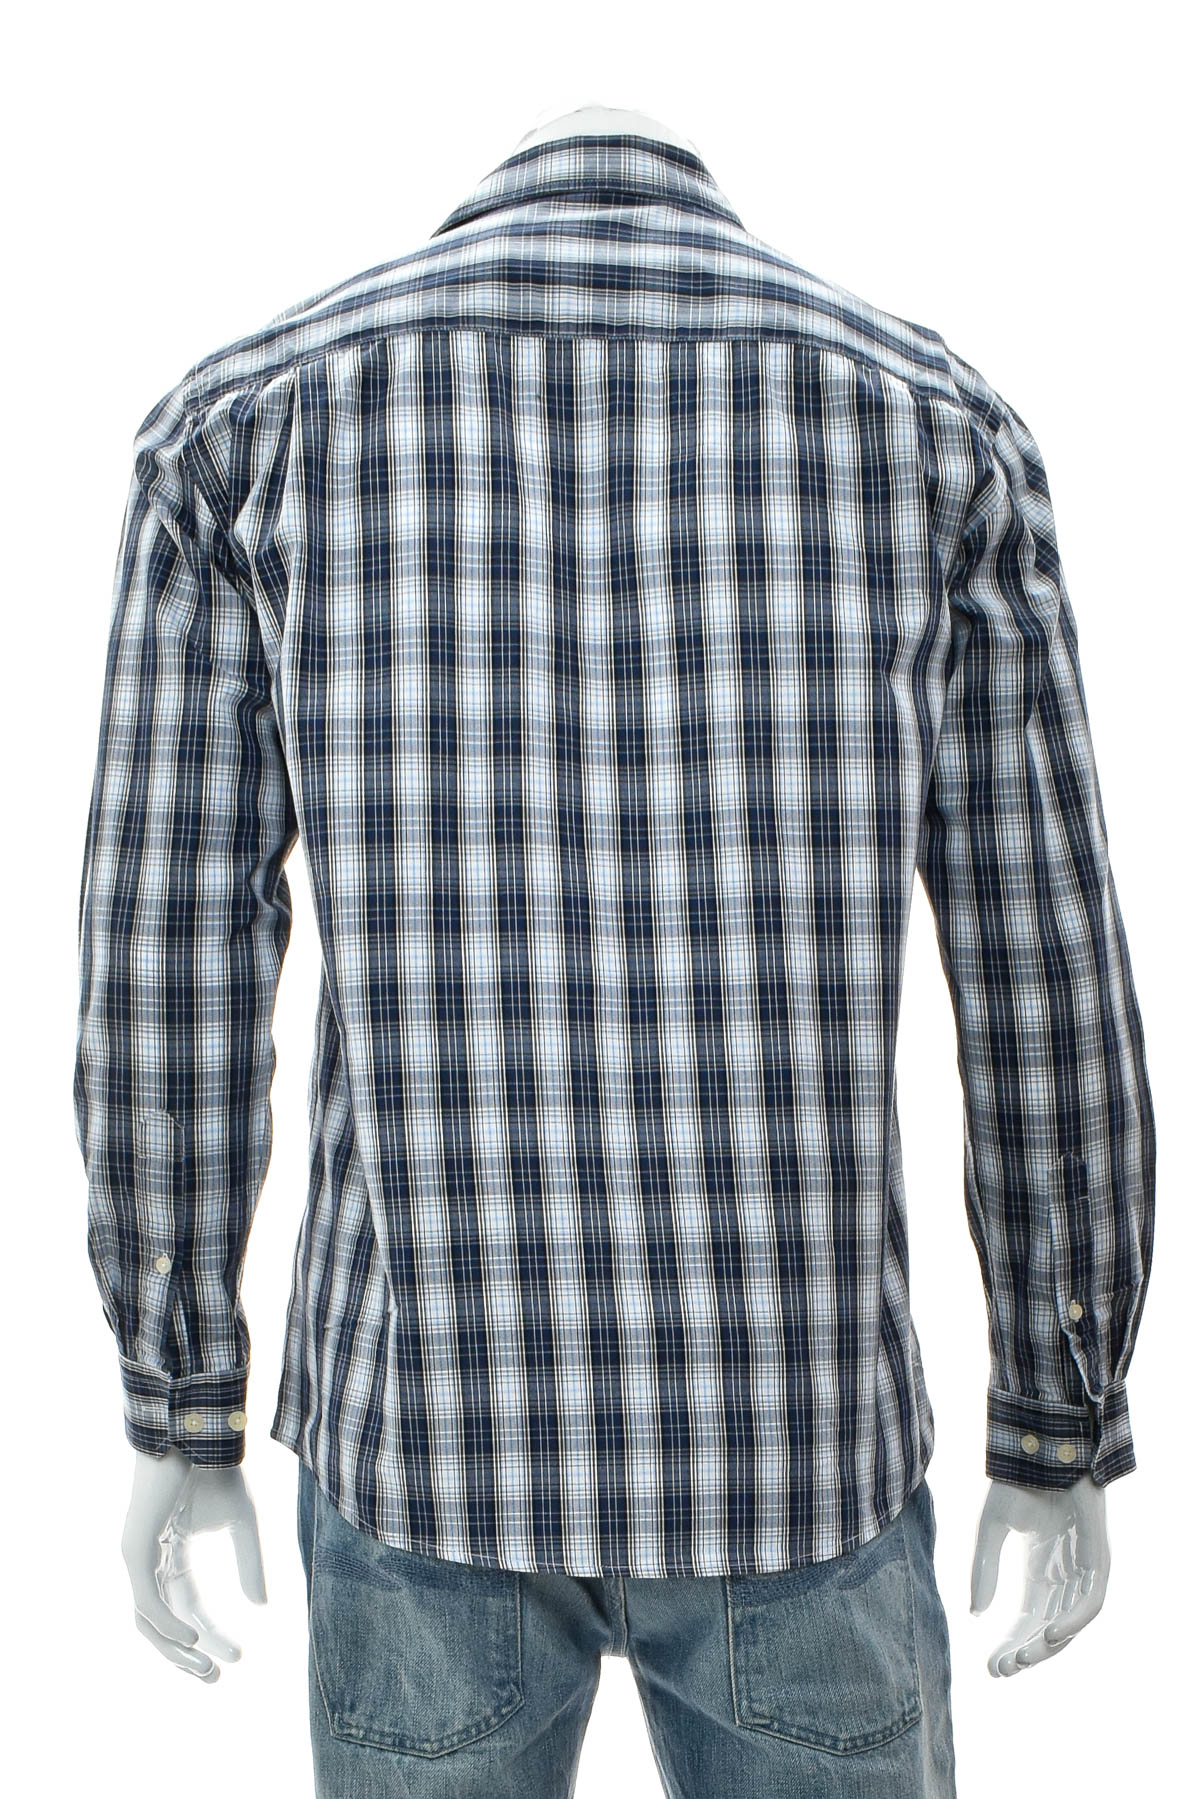 Ανδρικό πουκάμισο - Enrico Mori - 1